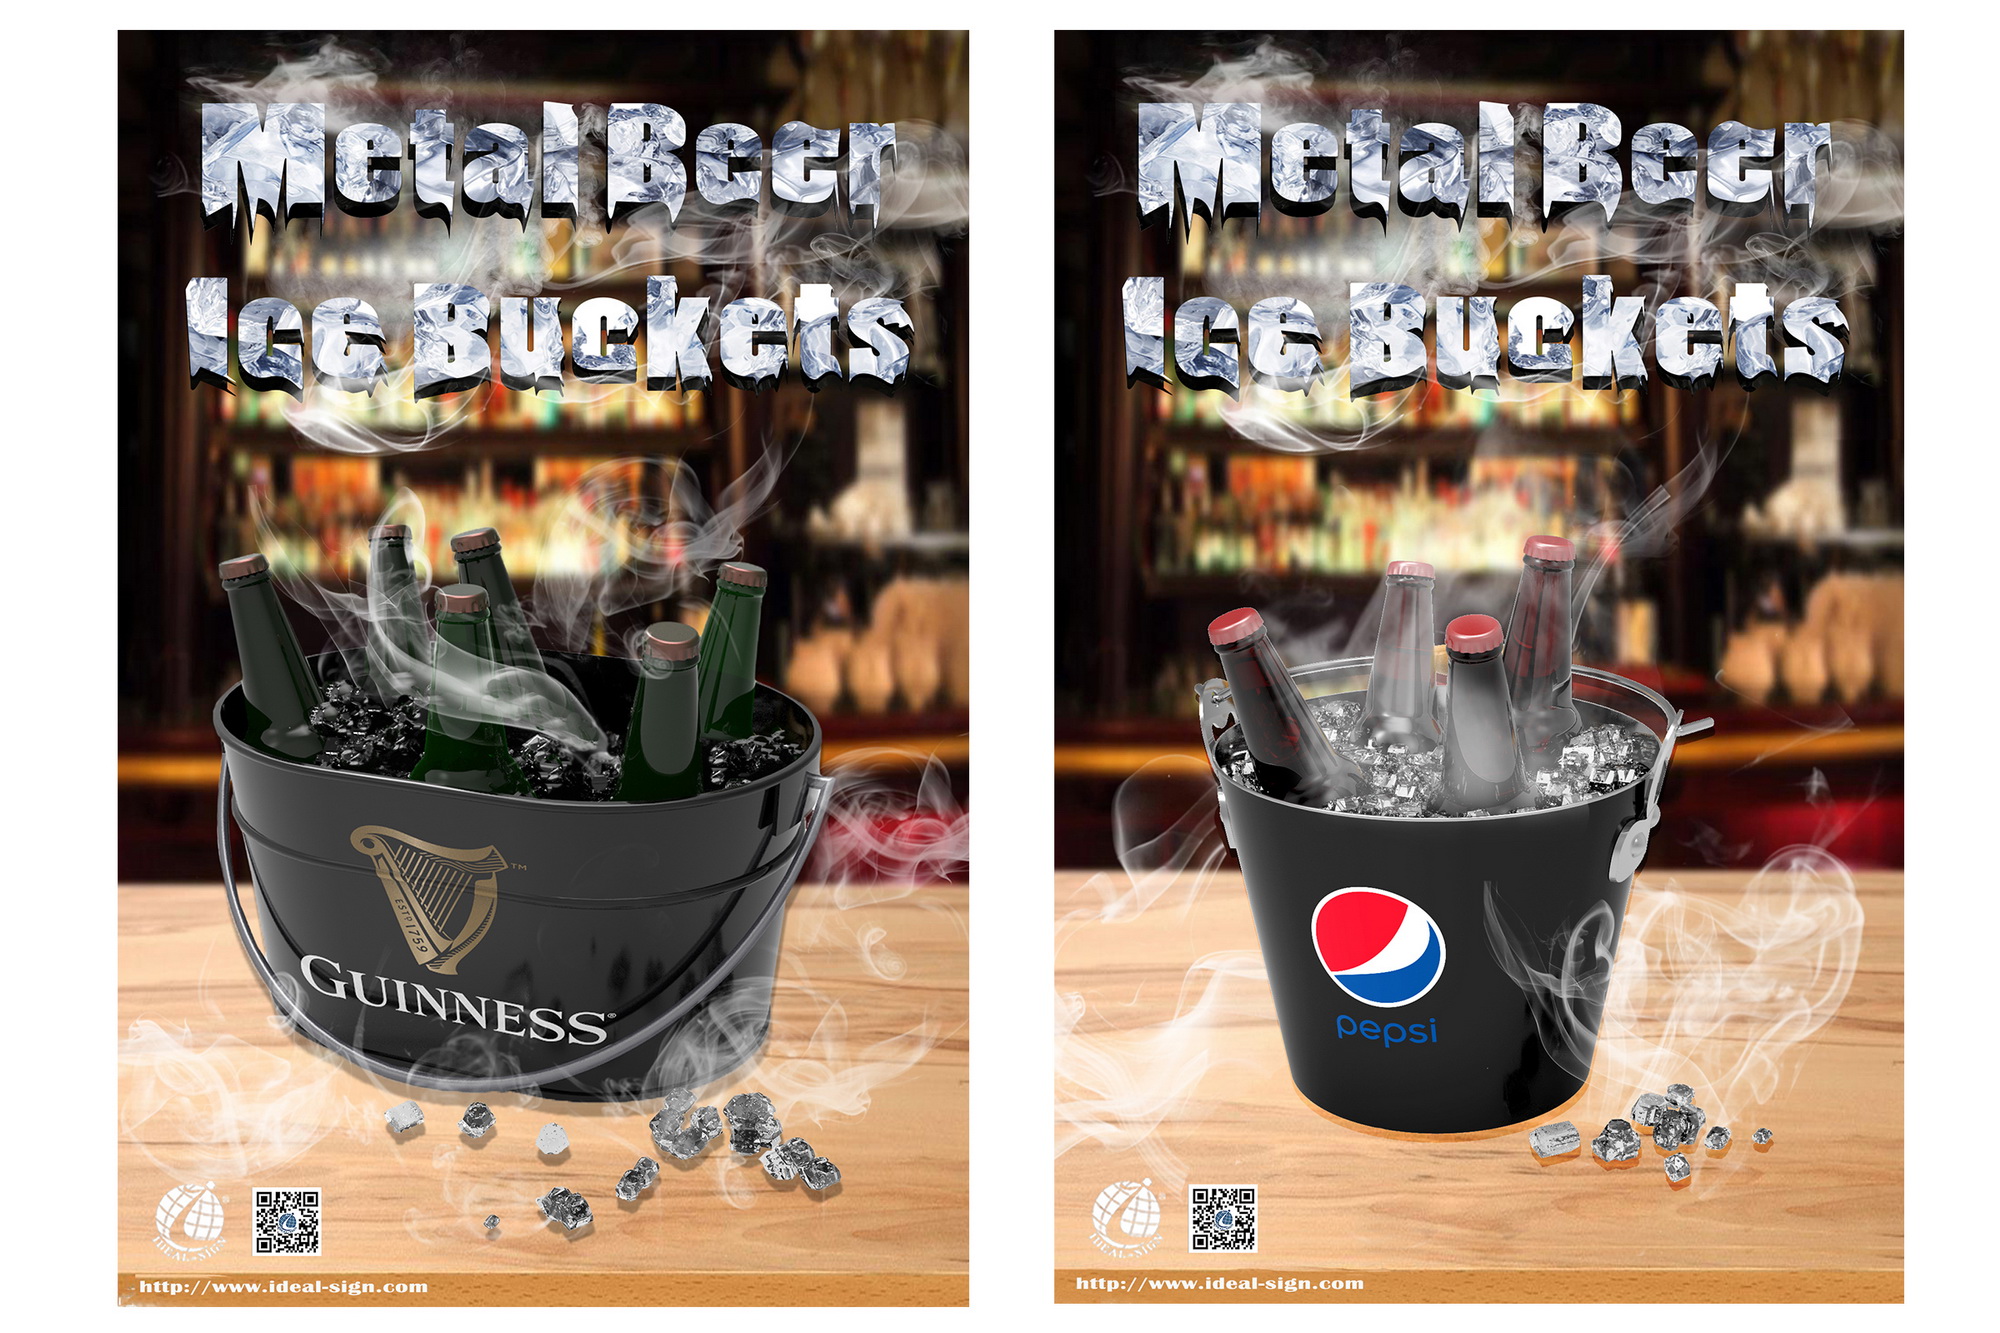 New Designs---Metal Beer Ice Buckets